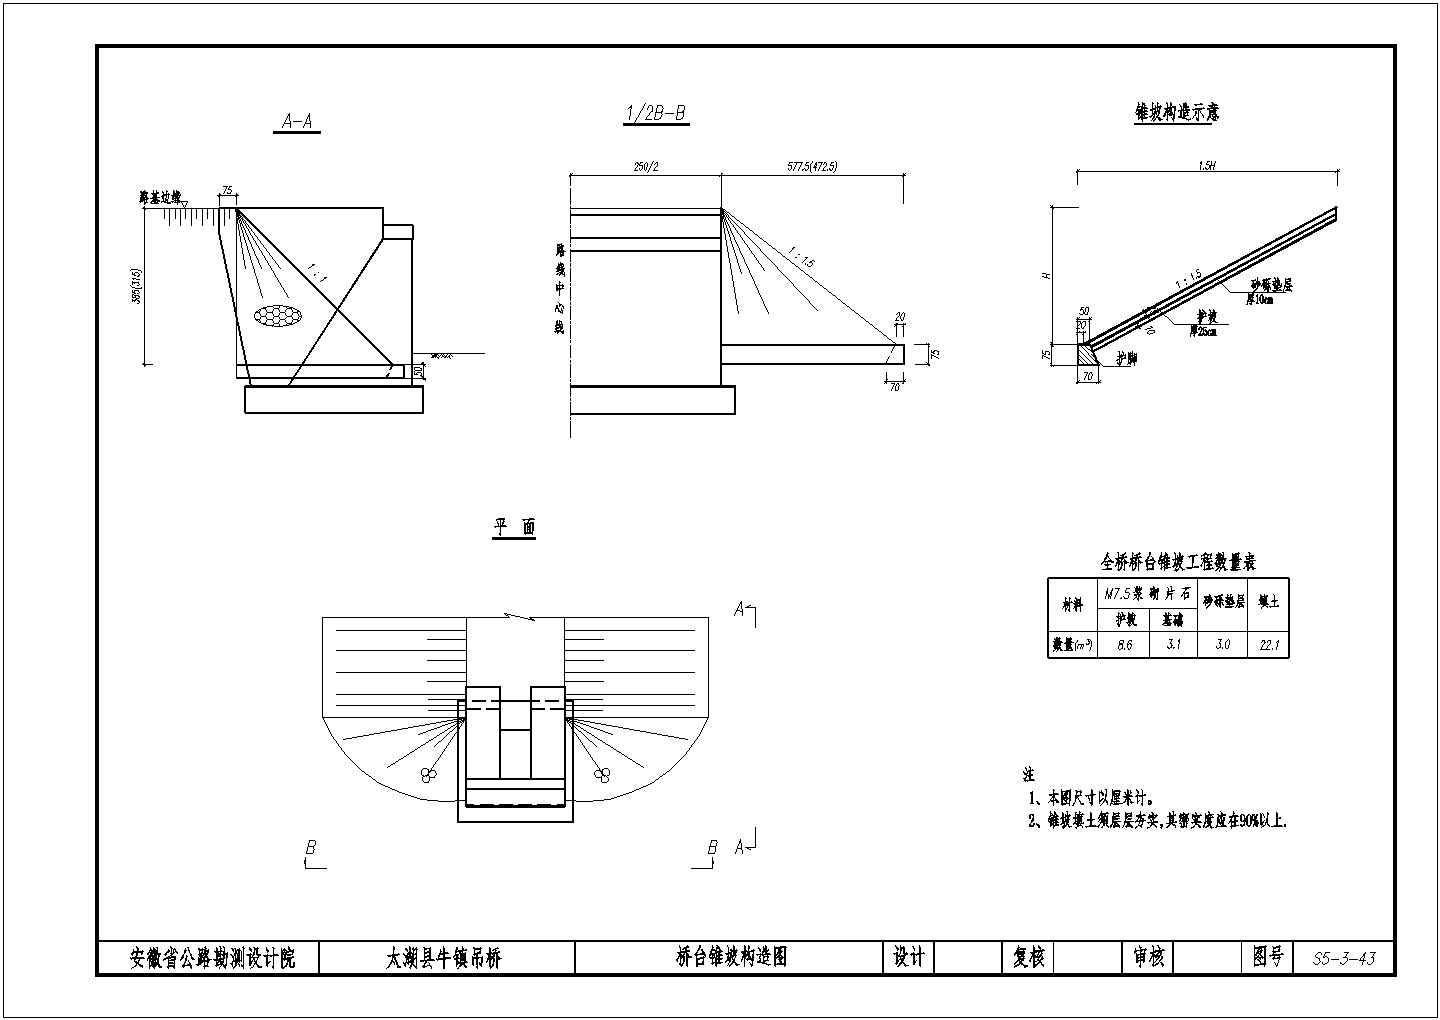 1-210m悬索桥 门型索塔全套设计图纸